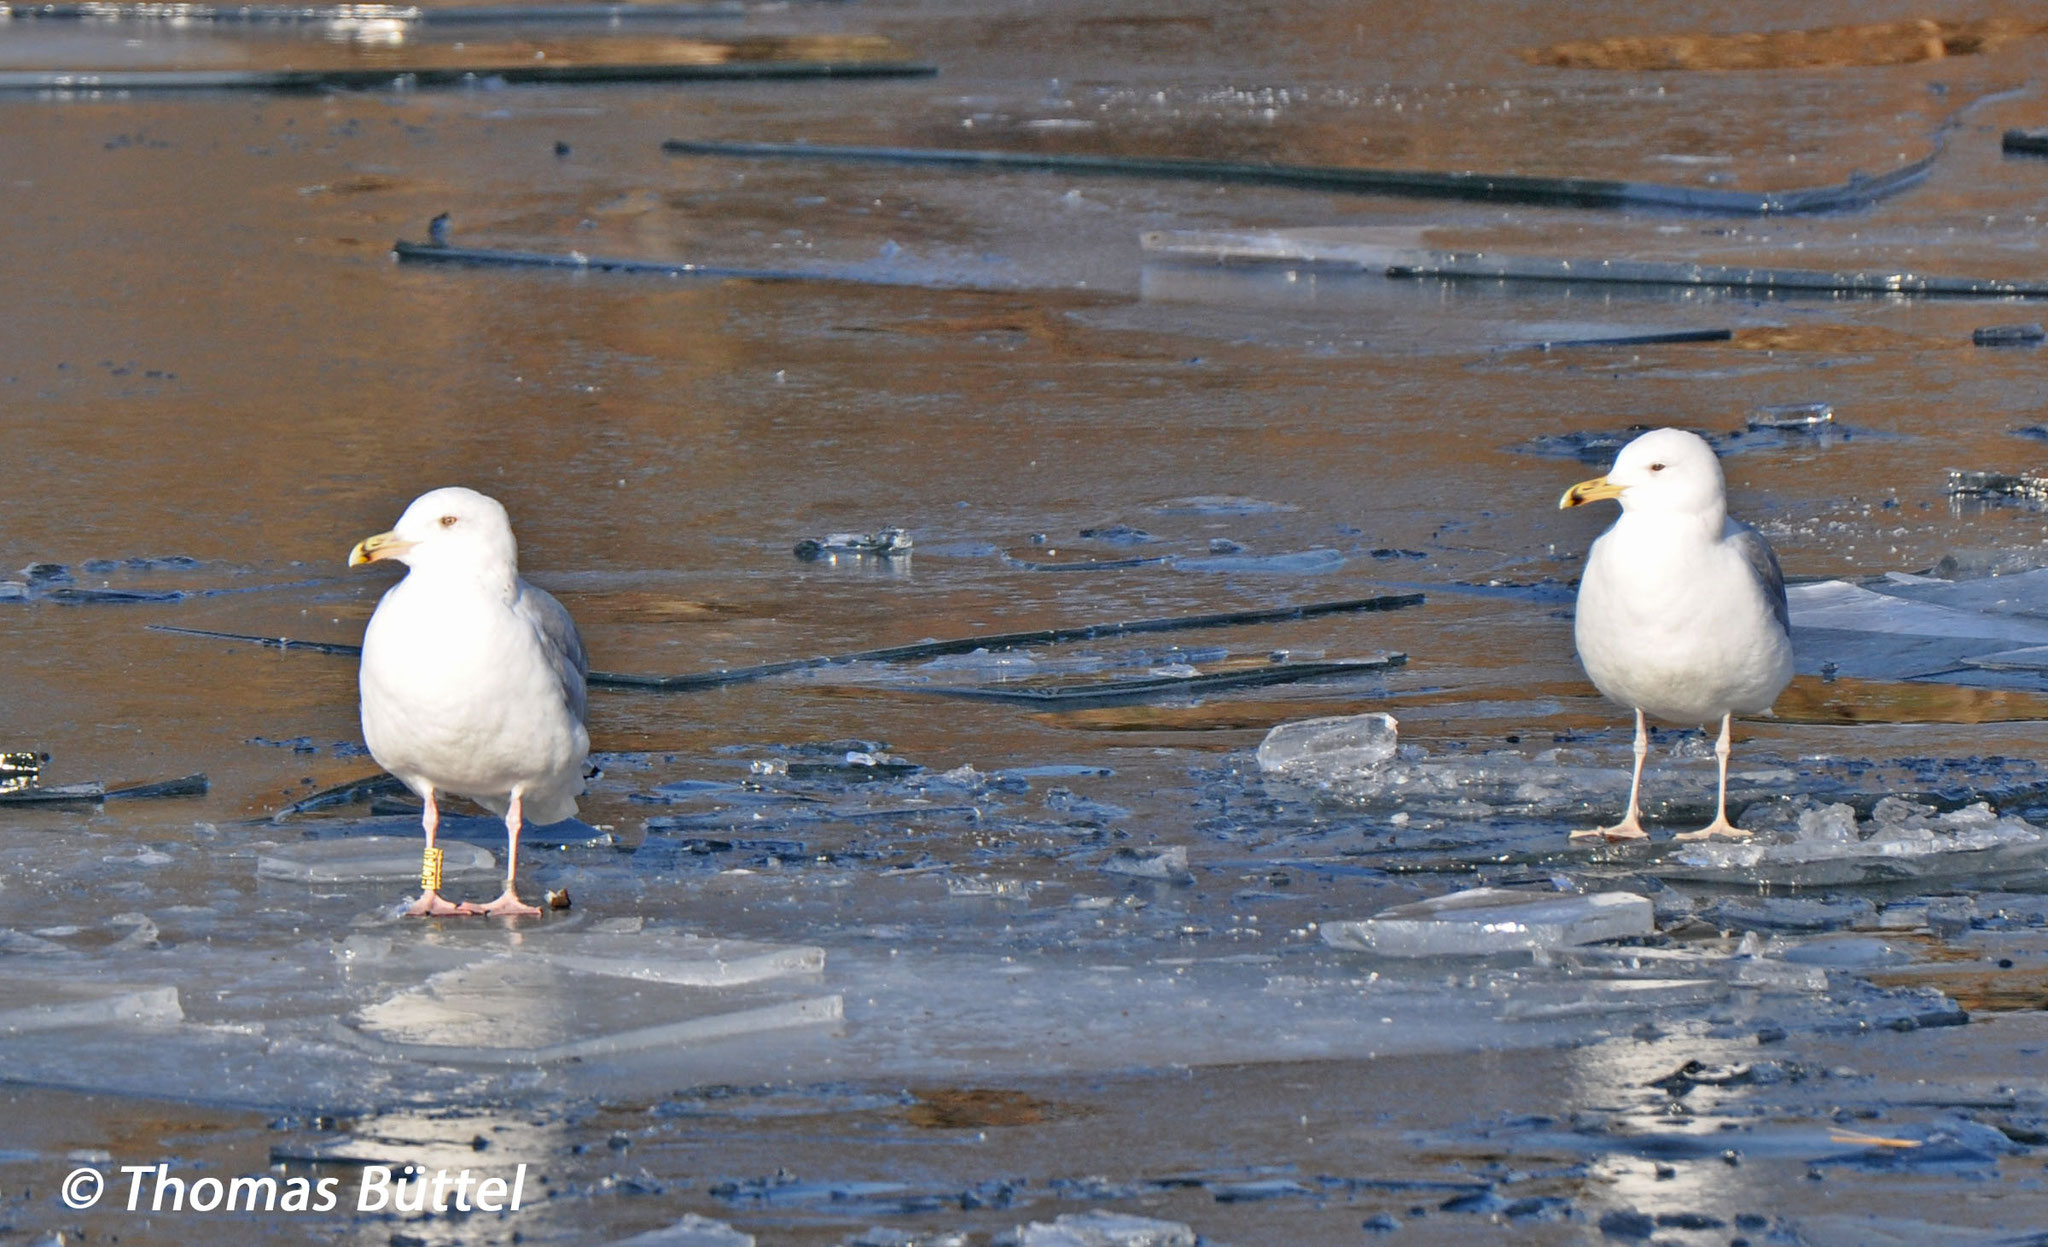 "Herring Gull" (left) and Caspian Gull (right)